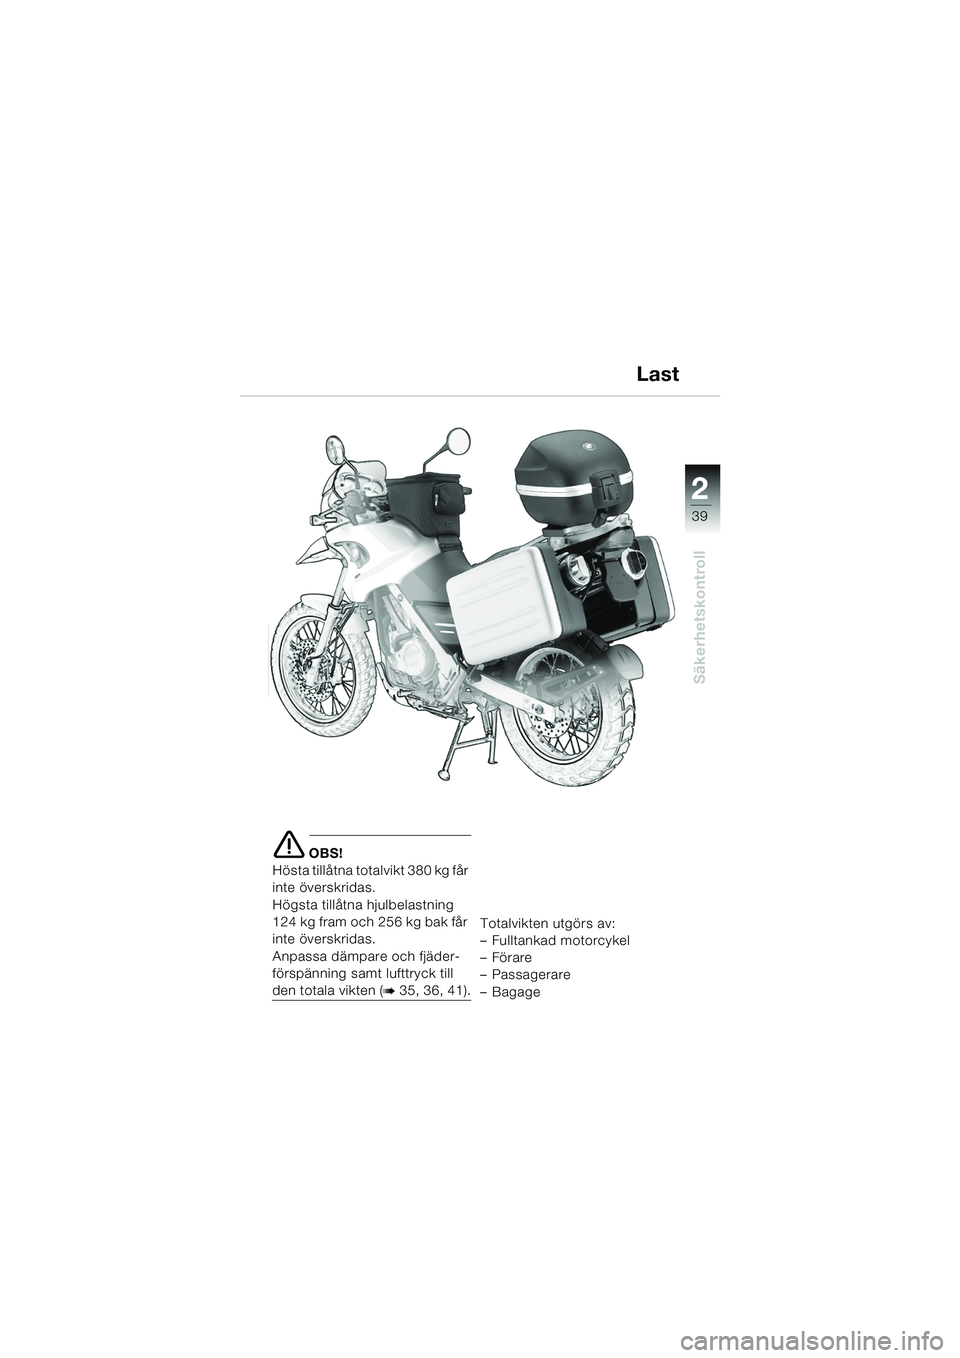 BMW MOTORRAD F 650 GS DAKAR 2003  Instruktionsbok (in Swedish) 1
39
Säkerhetskontroll
2
e OBS!
Hösta tillåtna totalvikt 380 kg får 
inte överskridas.
Högsta tillåtna hjulbelastning 
124 kg fram och 256 kg bak får 
inte överskridas.
Anpassa dämpare och f